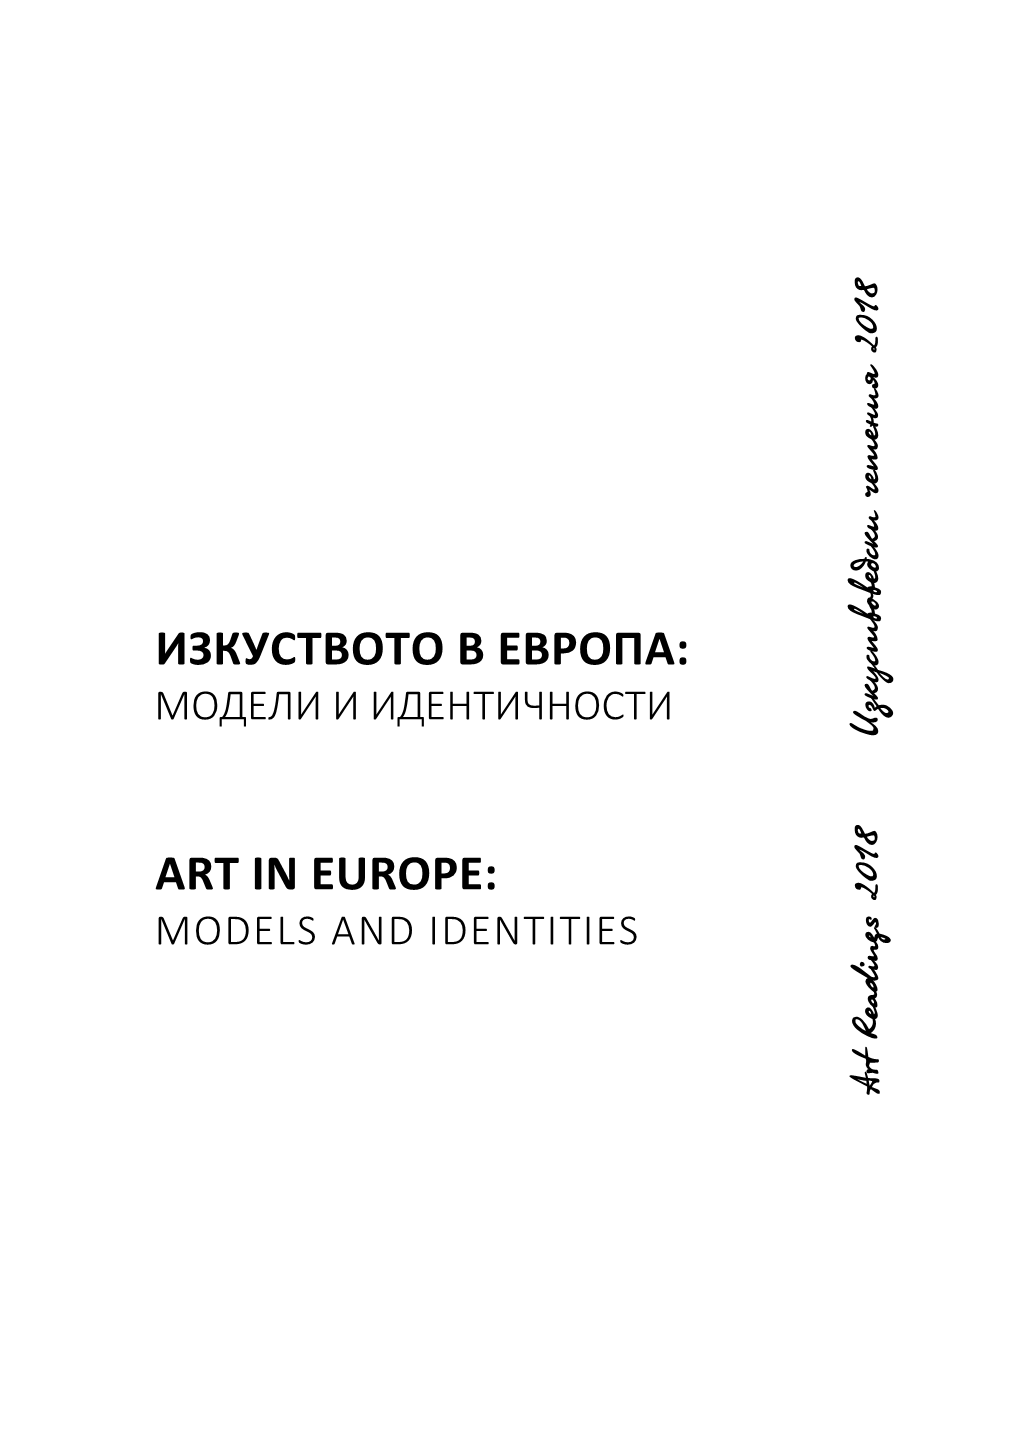 Изкуството В Европа: Art in Europe: Модели И Идентичности Models and Identities